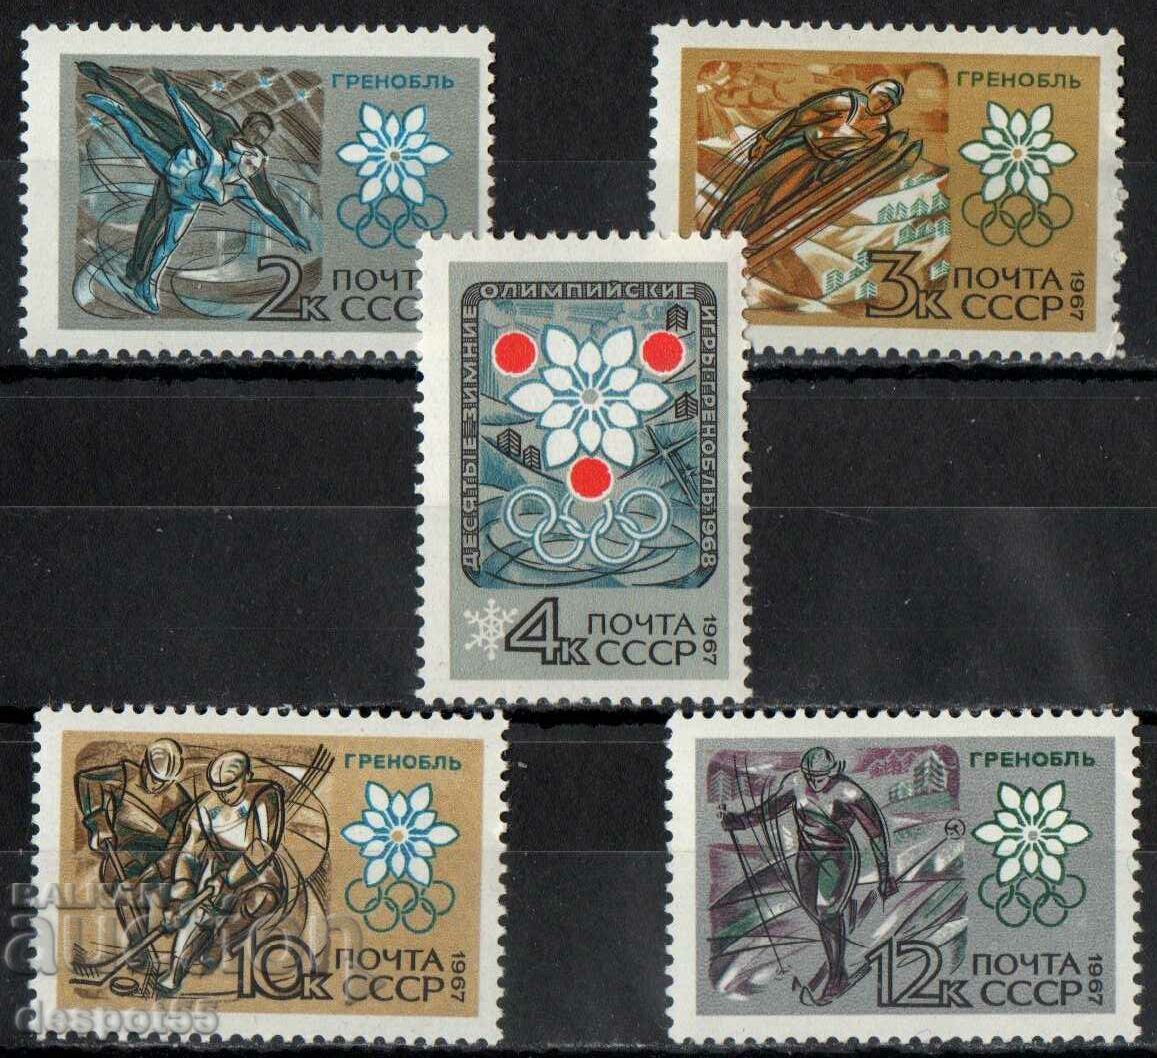 1967 URSS. Jocurile Olimpice de iarnă - Grenoble 1968, Franța